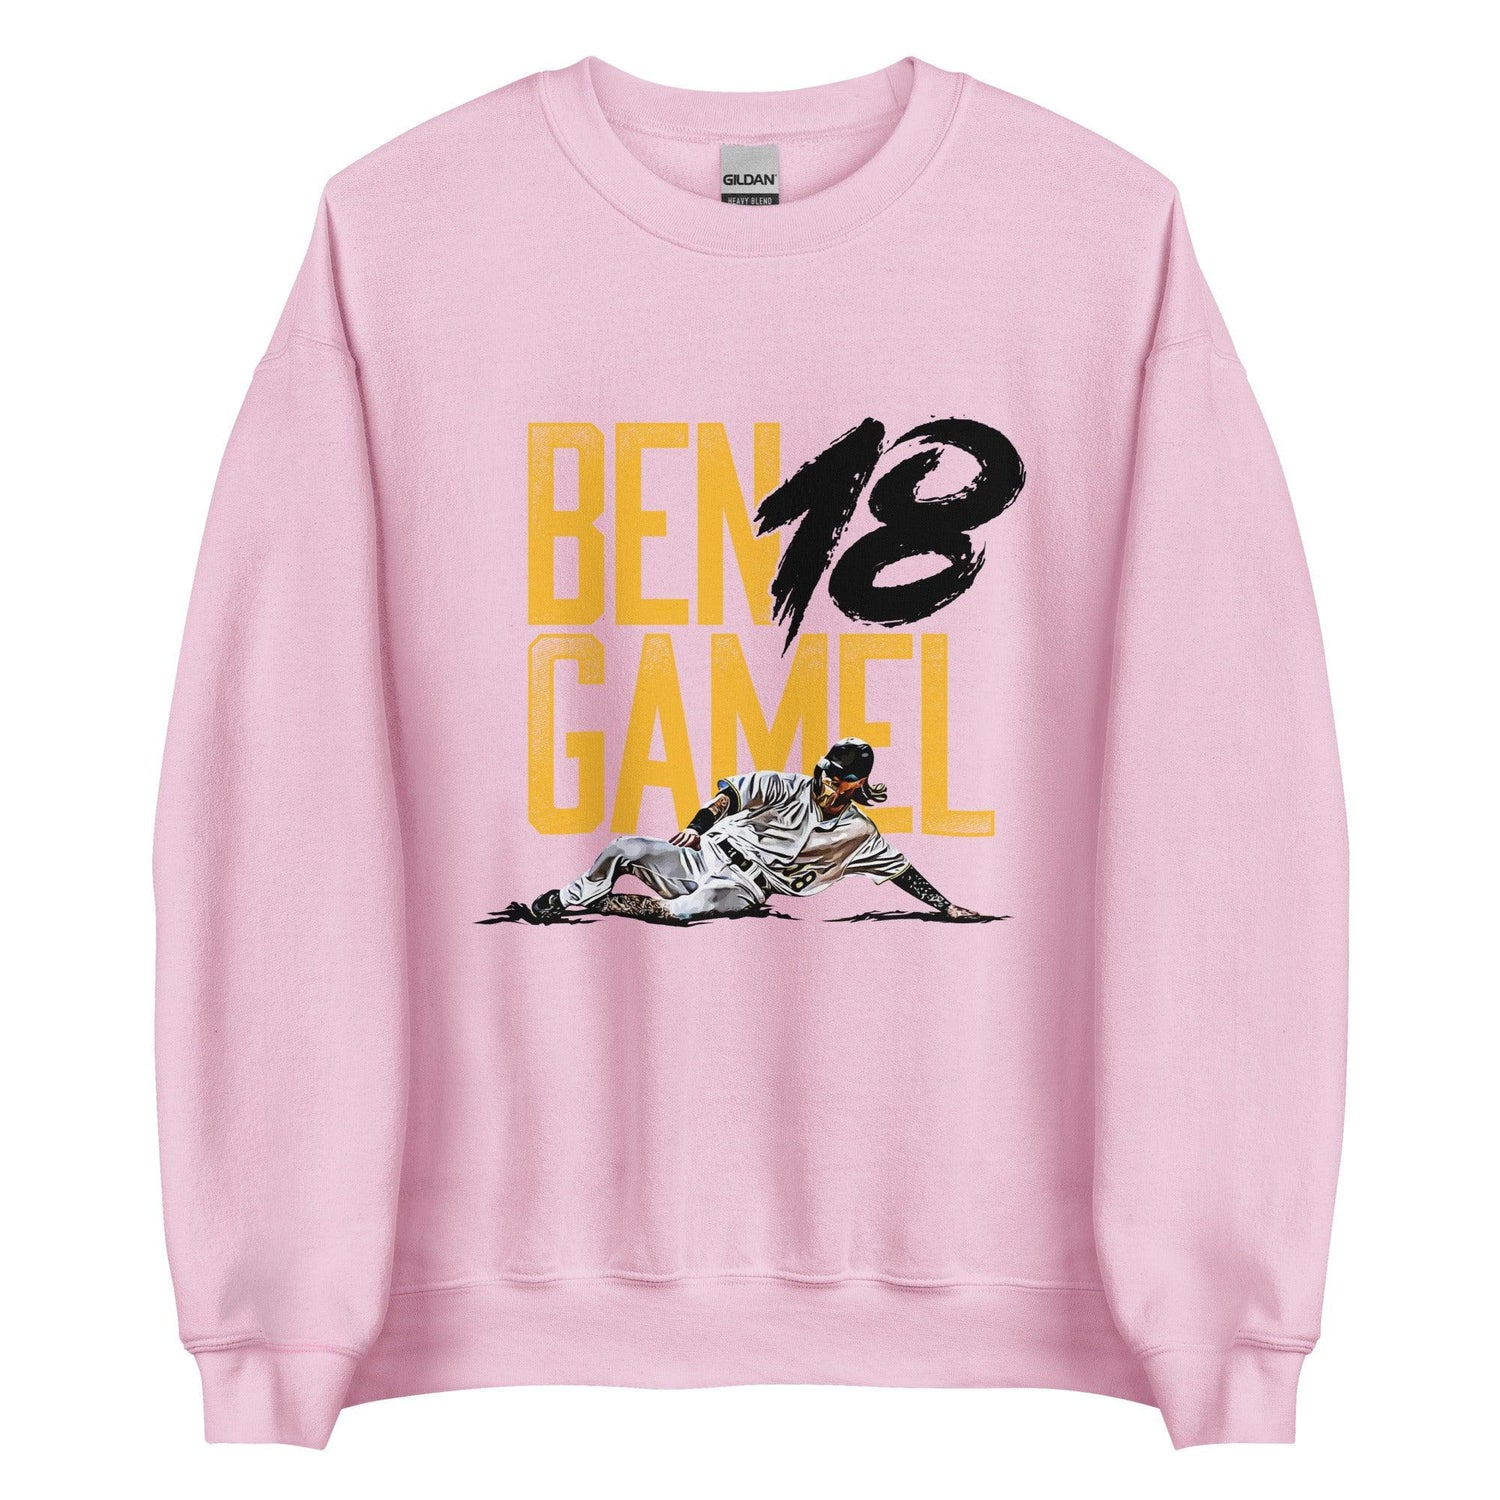 Ben Gamel "Hustle" Sweatshirt - Fan Arch